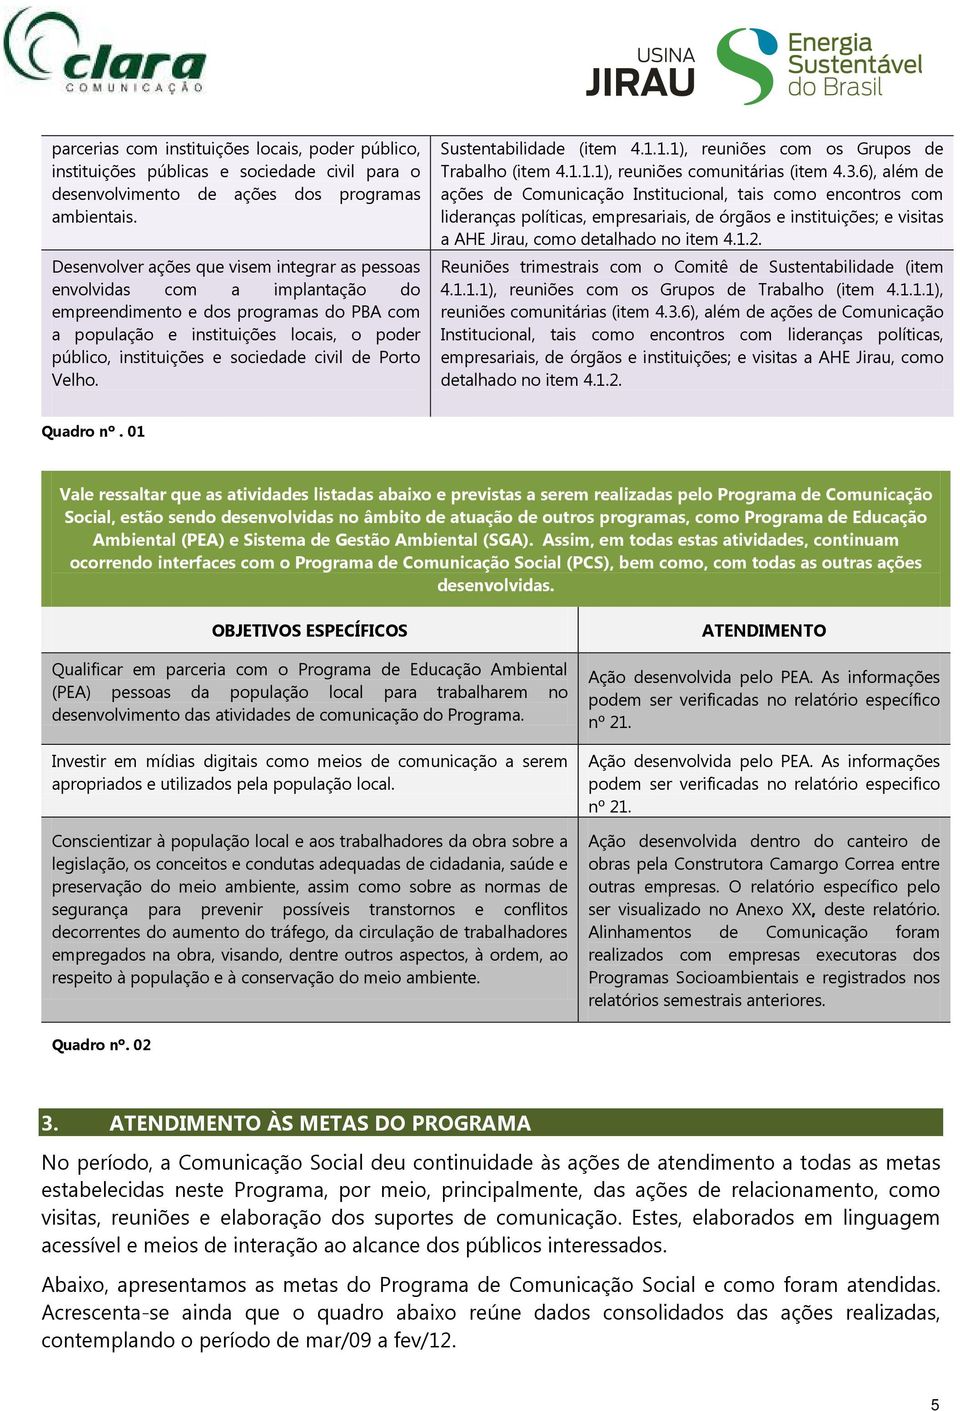 civil de Porto Velho. Sustentabilidade (item 4...), reuniões com os Grupos de Trabalho (item 4...), reuniões comunitárias (item 4.3.